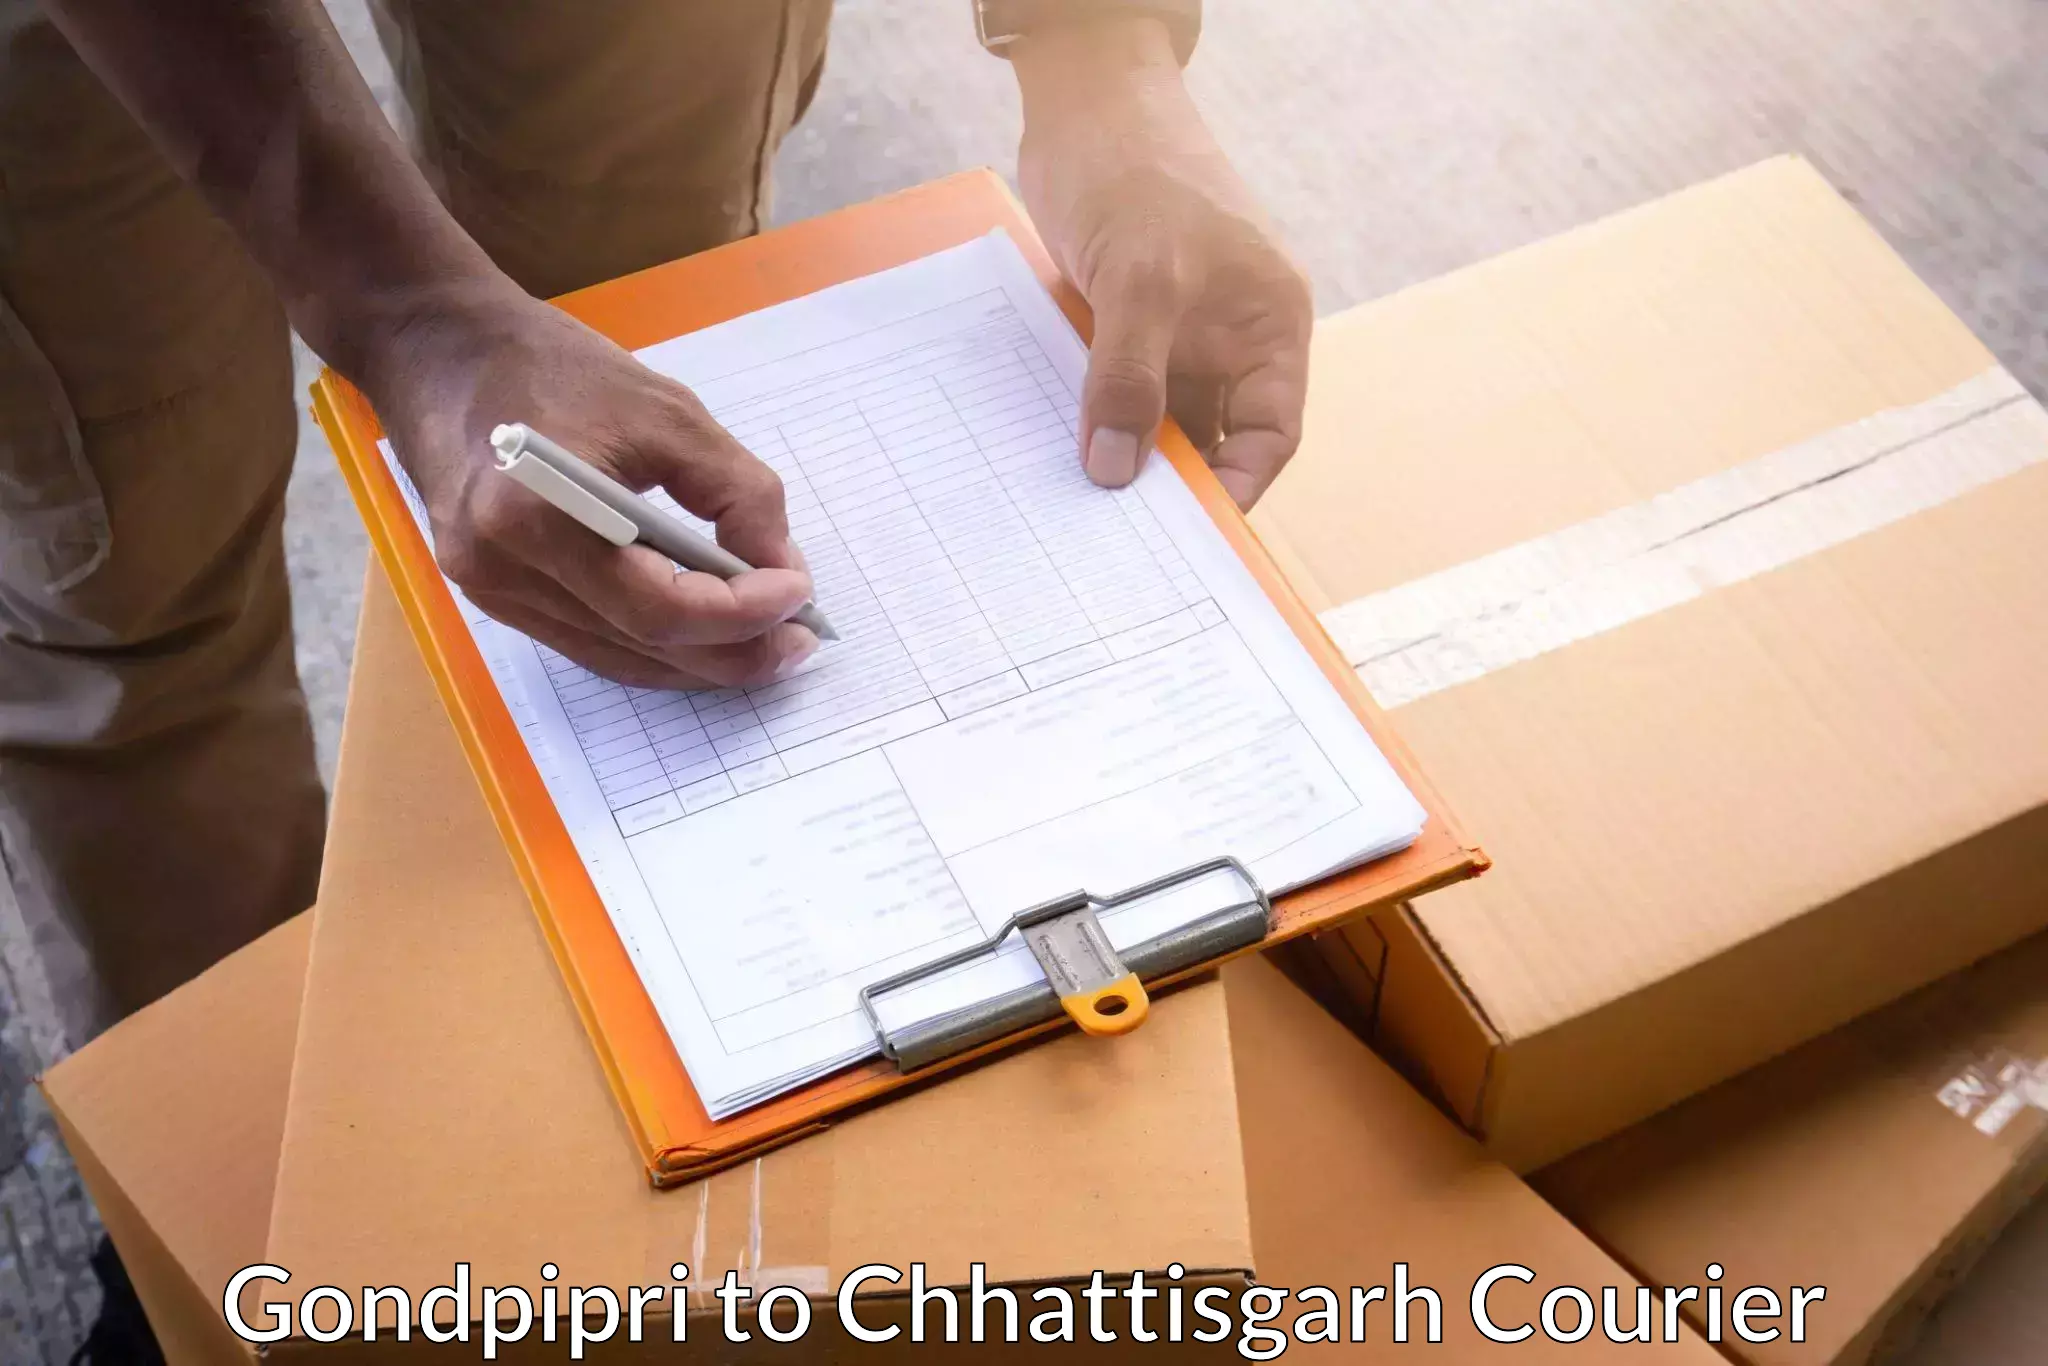 24-hour courier service Gondpipri to Chhattisgarh